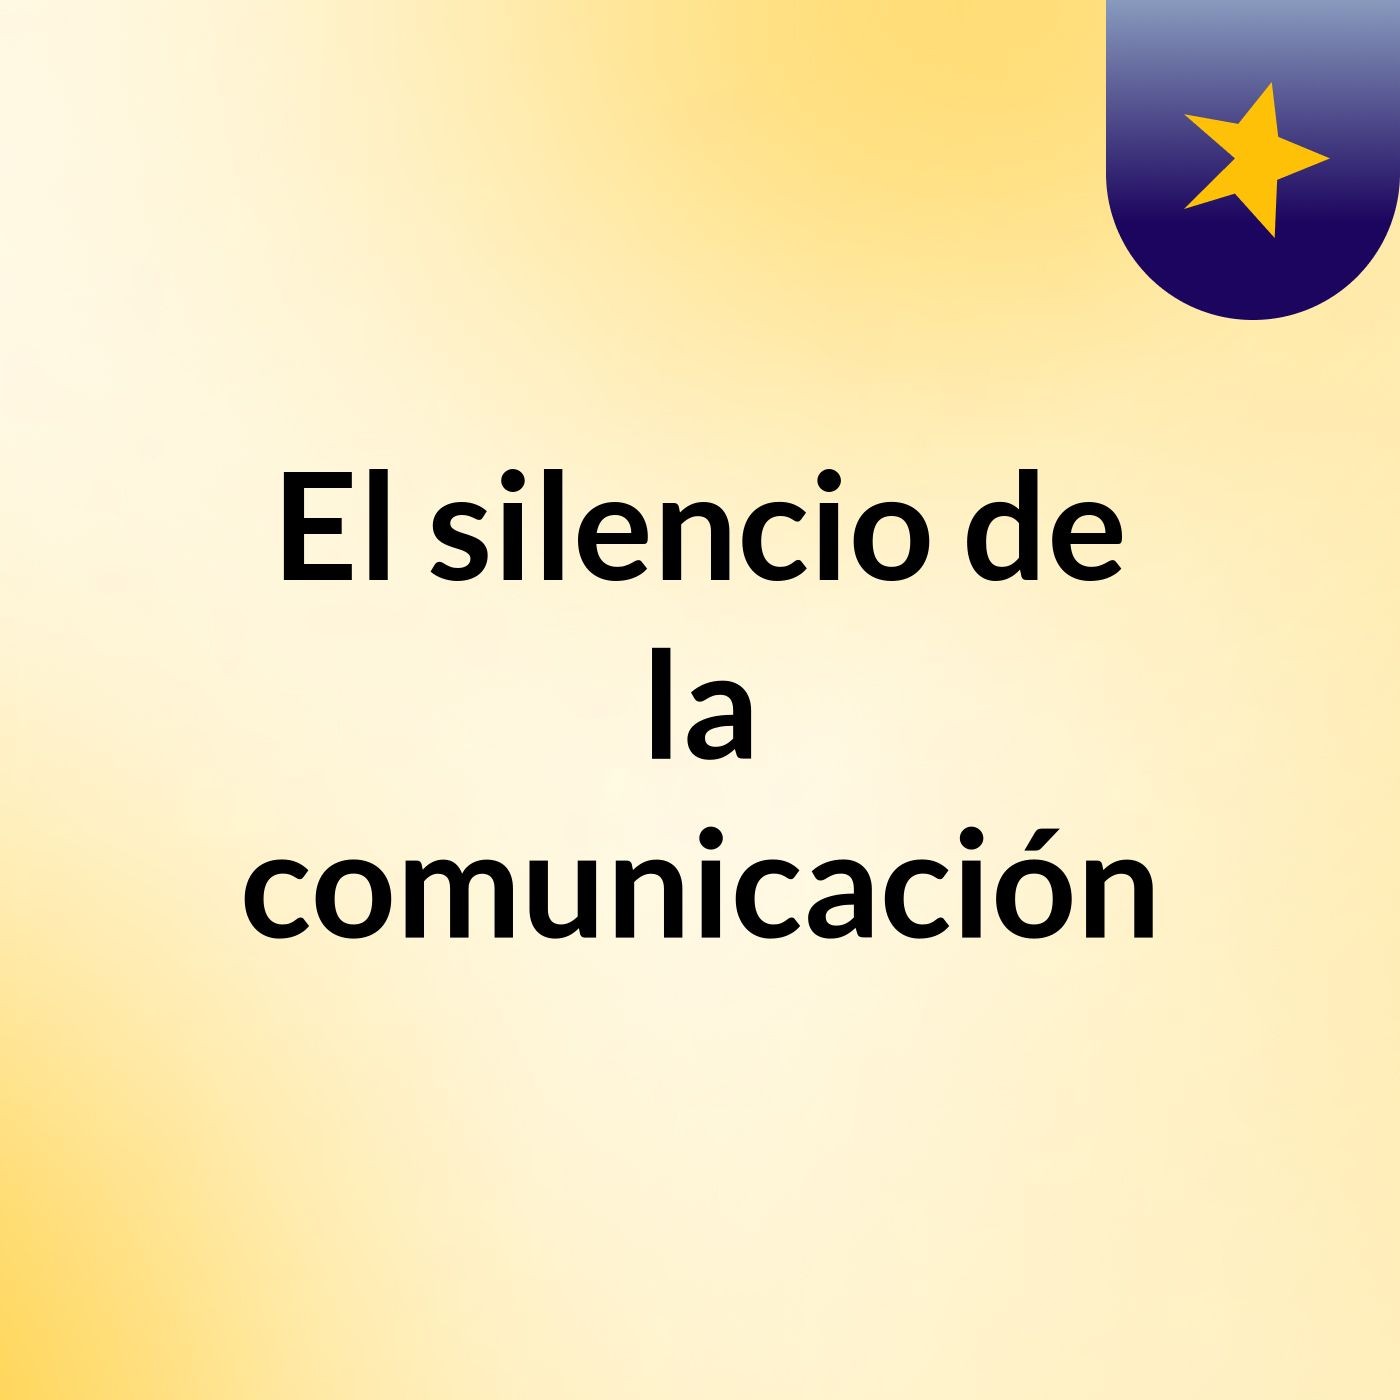 El silencio de la comunicación